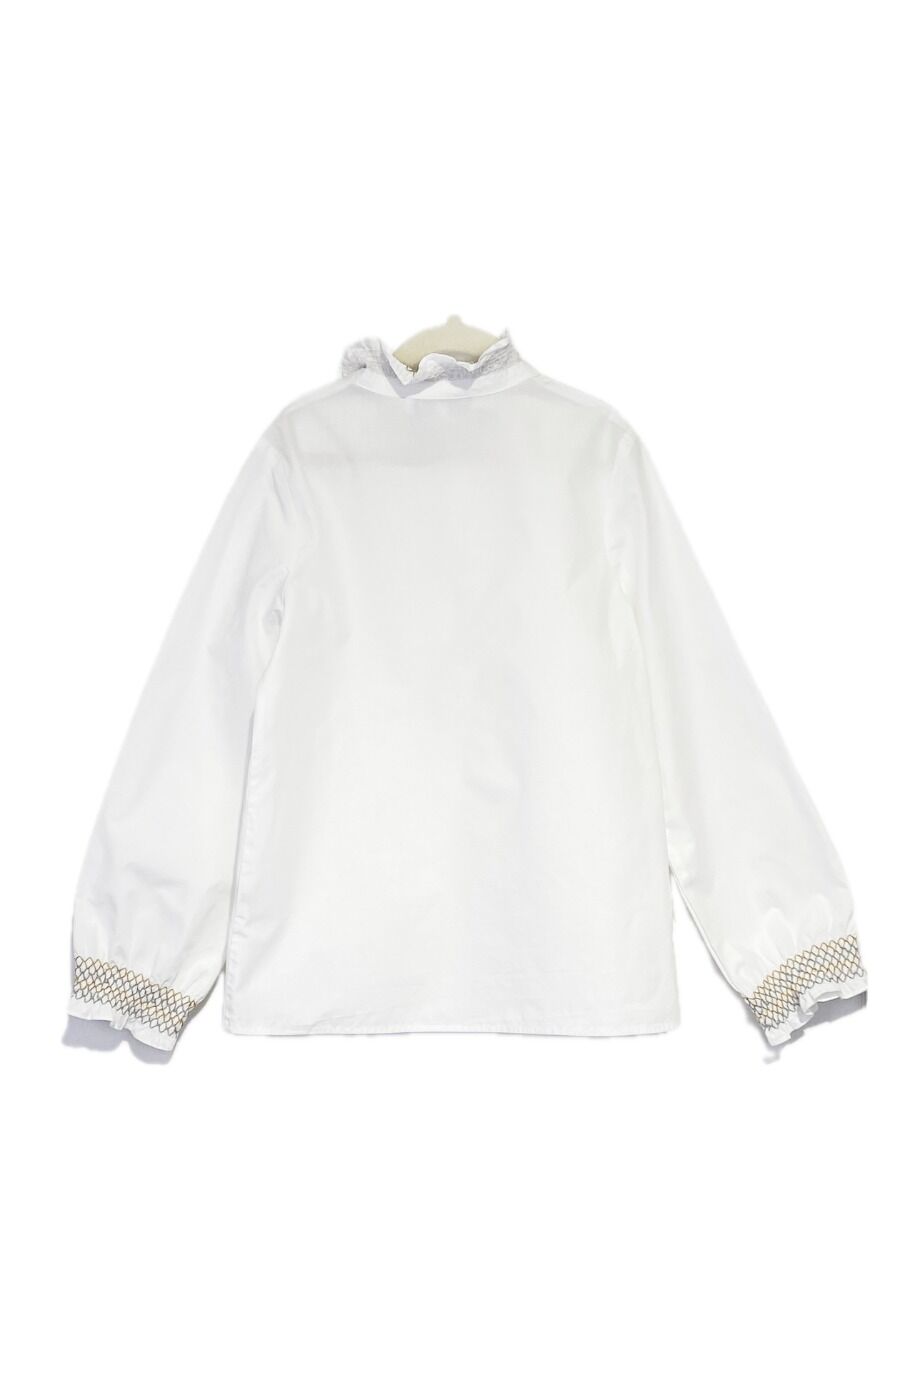 image 2 Детская рубашка белого цвета с вышивкой на воротнике и манжетах